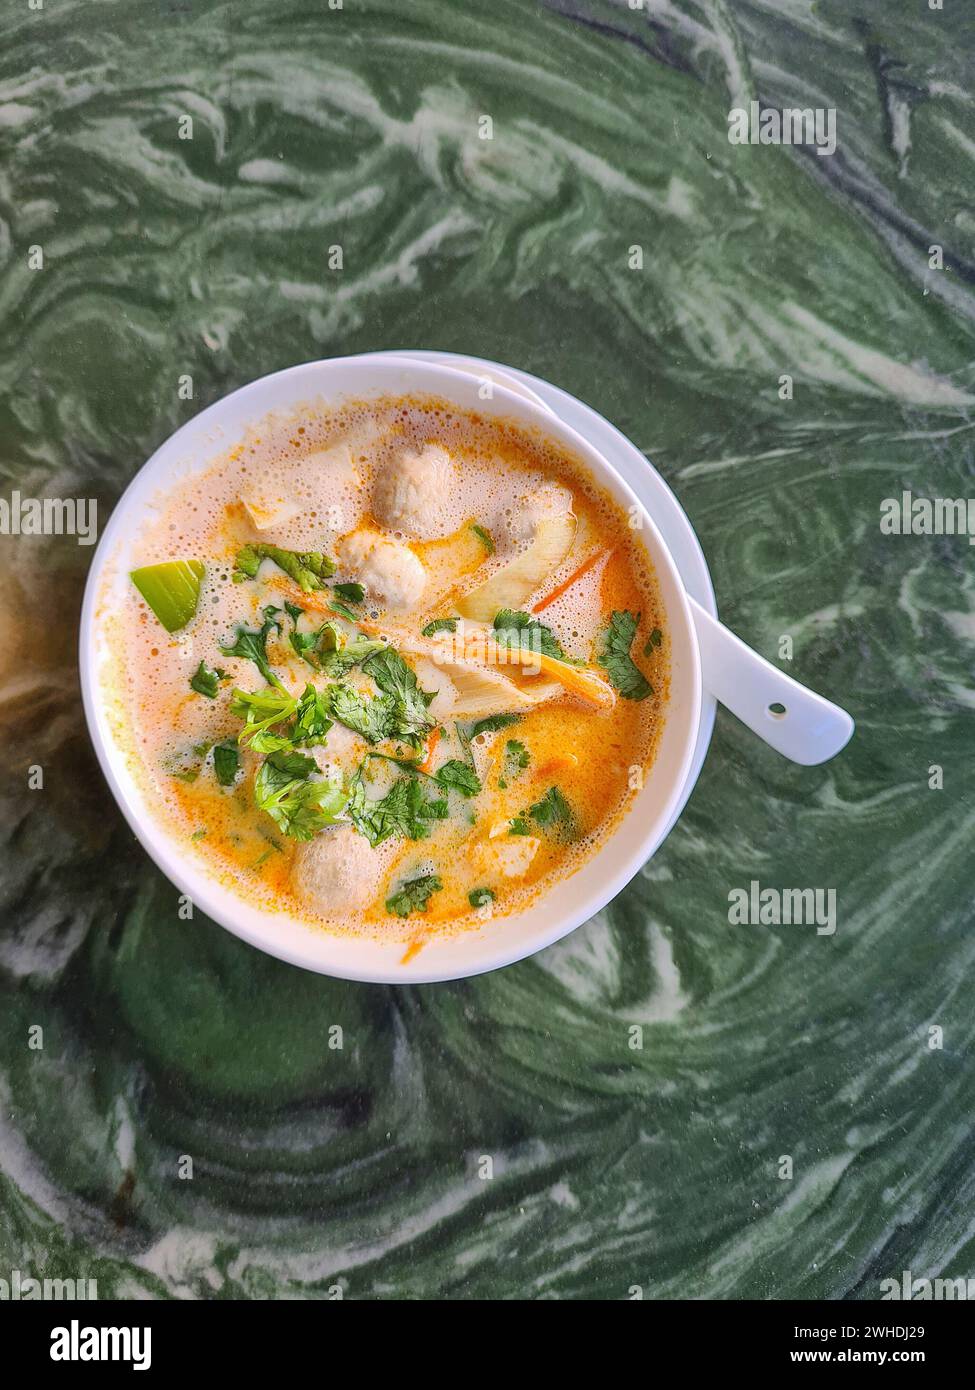 Tom Kha GAI, zuppa di pollo in una ciotola bianca, contiene gli ingredienti latte di cocco, galangal, citronella, pollo, porro e prezzemolo Foto Stock